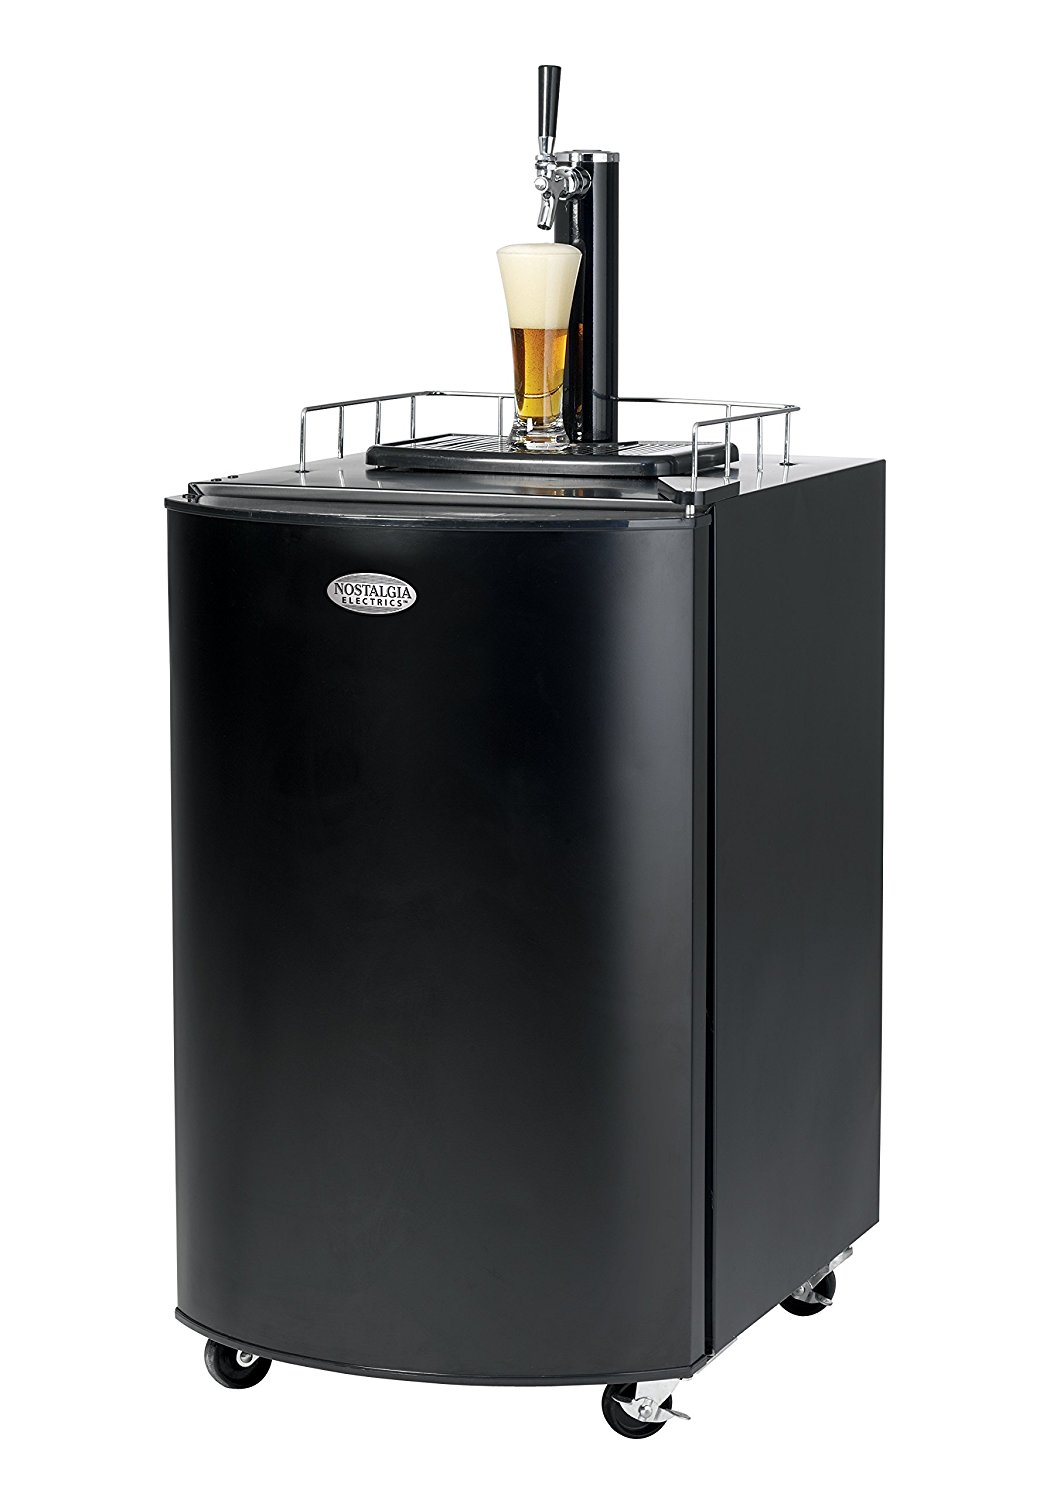 Nostalgia KRS2100 5.1 Cubic-Foot Full Size Kegorator Draft Beer Dispenser